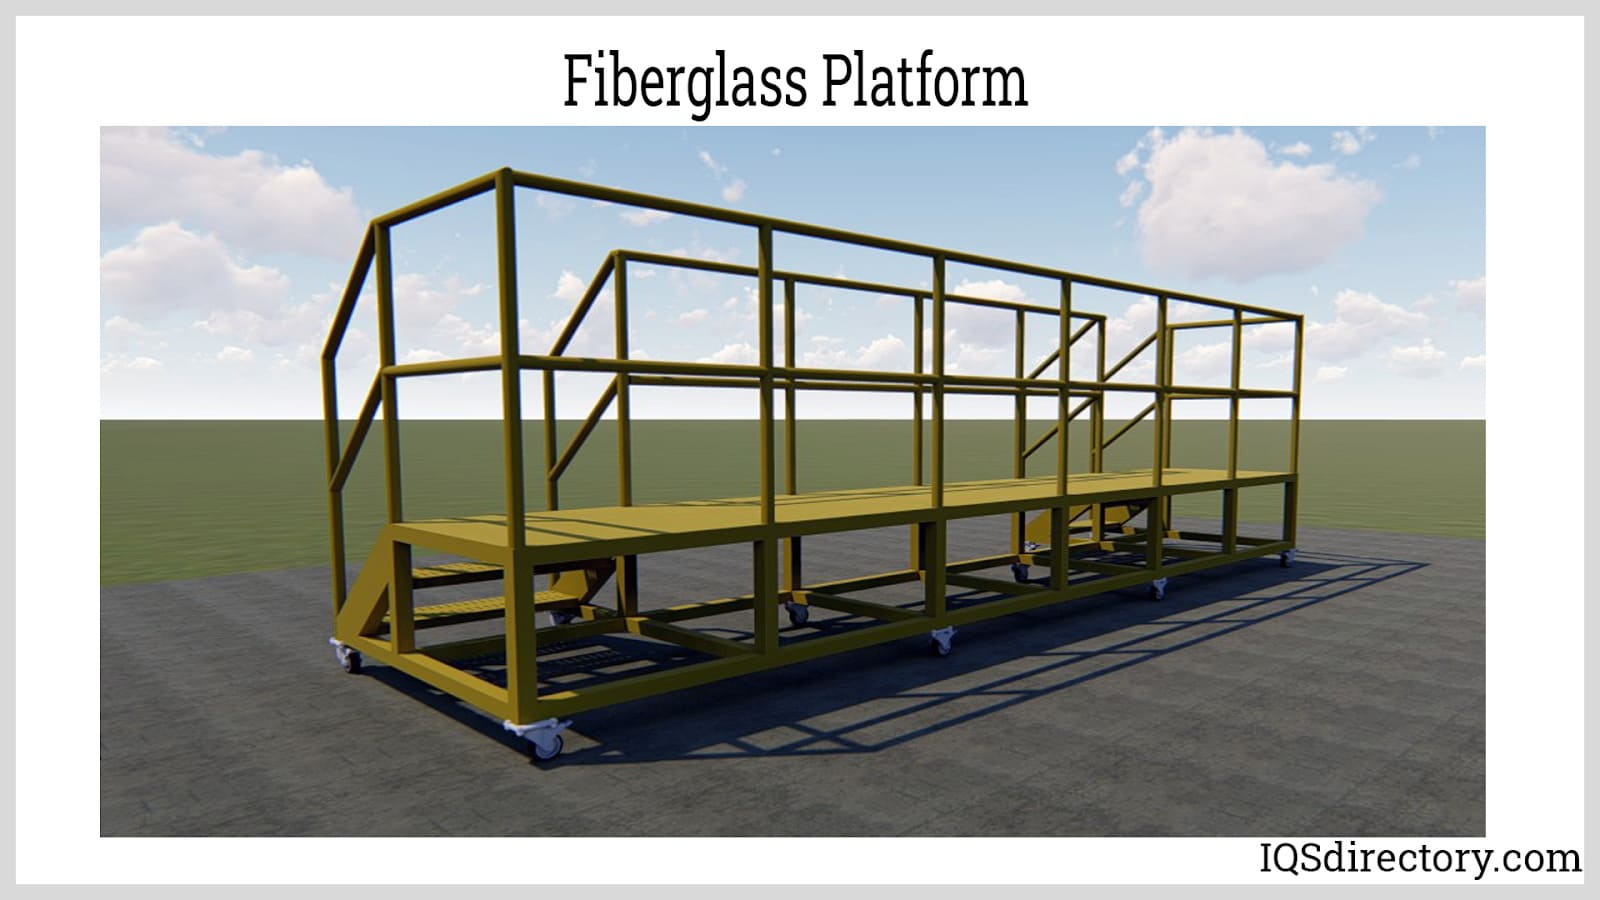 Fiberglass Platform